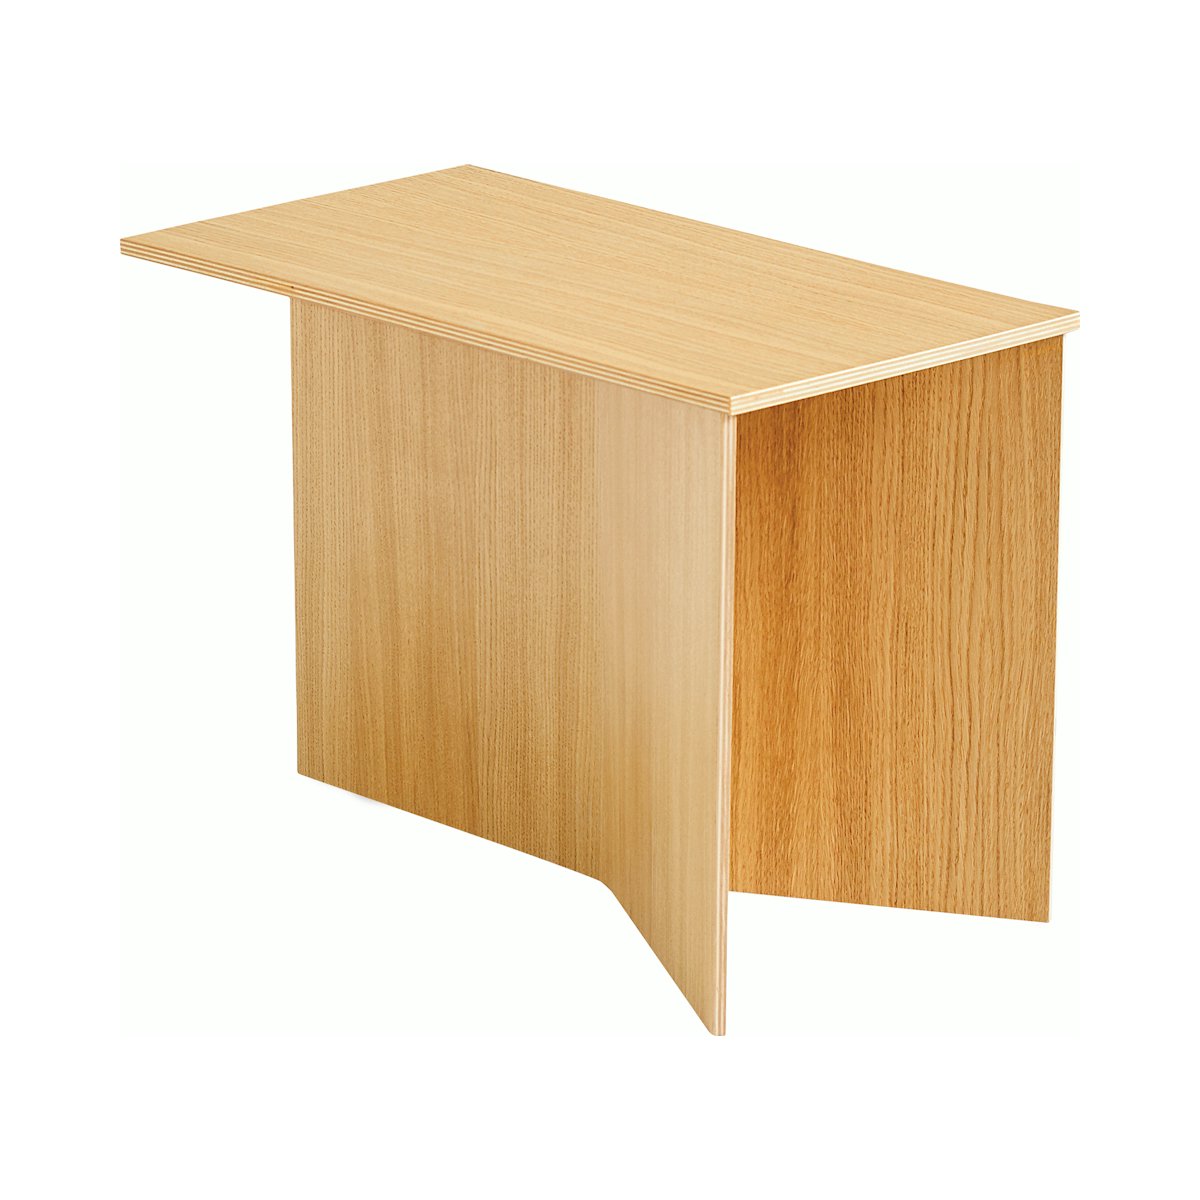 Wood Slit Side Table, Oblong